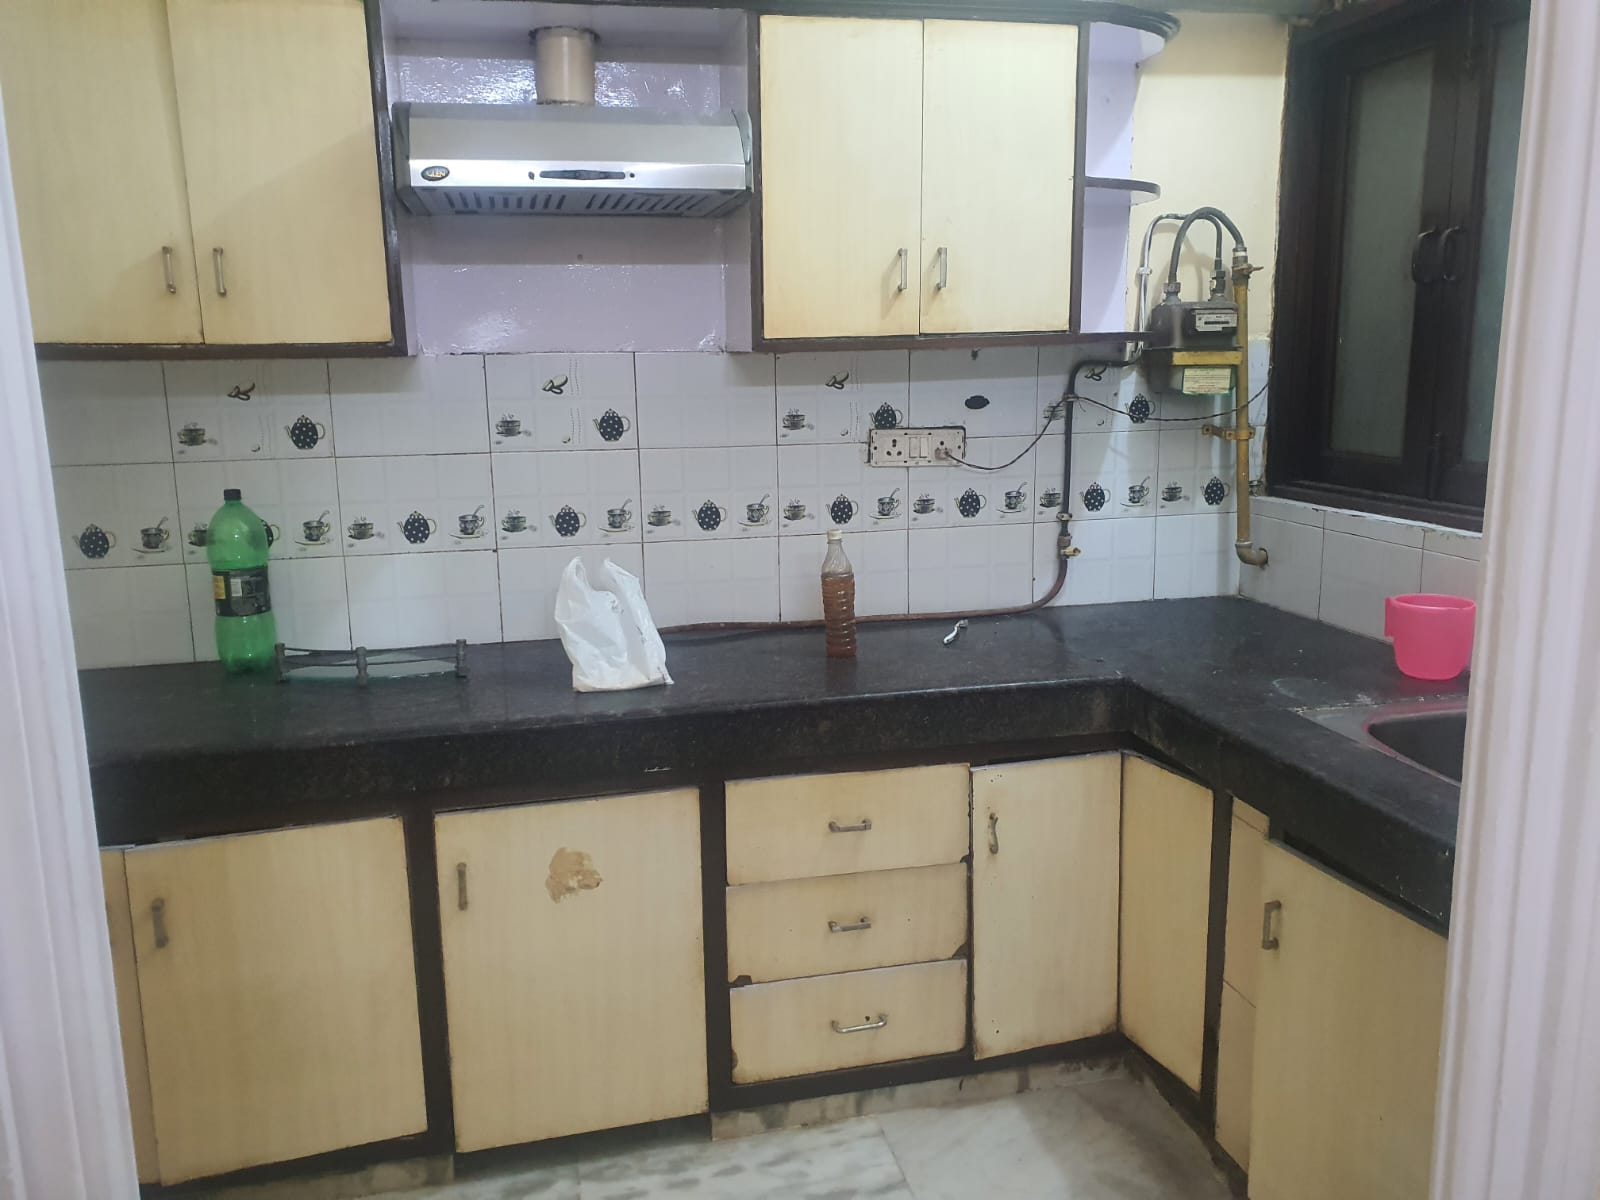 Serene 2 BHK Ground Floor for Rent in C5A Block, Janakpuri | Park Views, Modern Kitchen | Janakpuri Homes